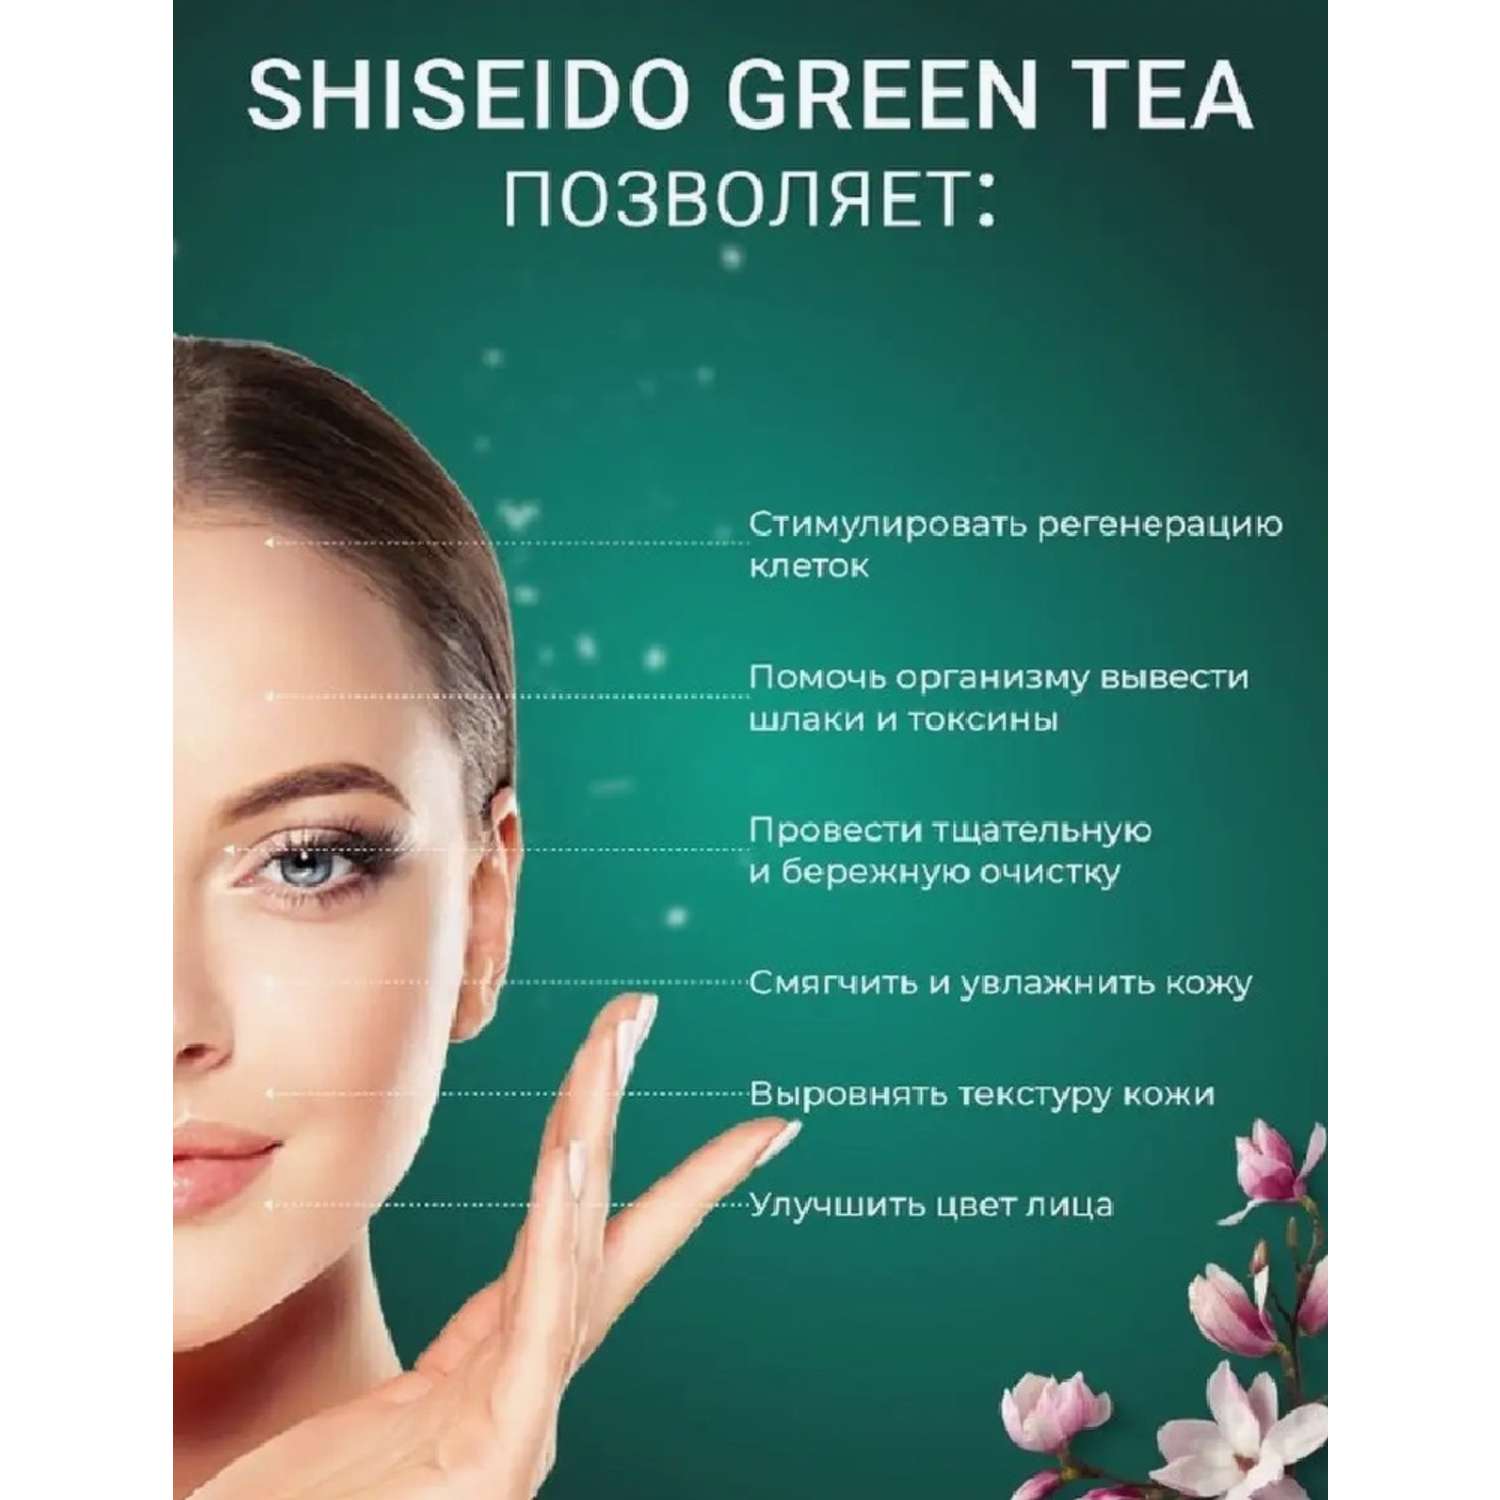 Гель-скатка-пиллинг CASTLELADY SHISEIDO Green Tea для лица интенсивный - фото 5